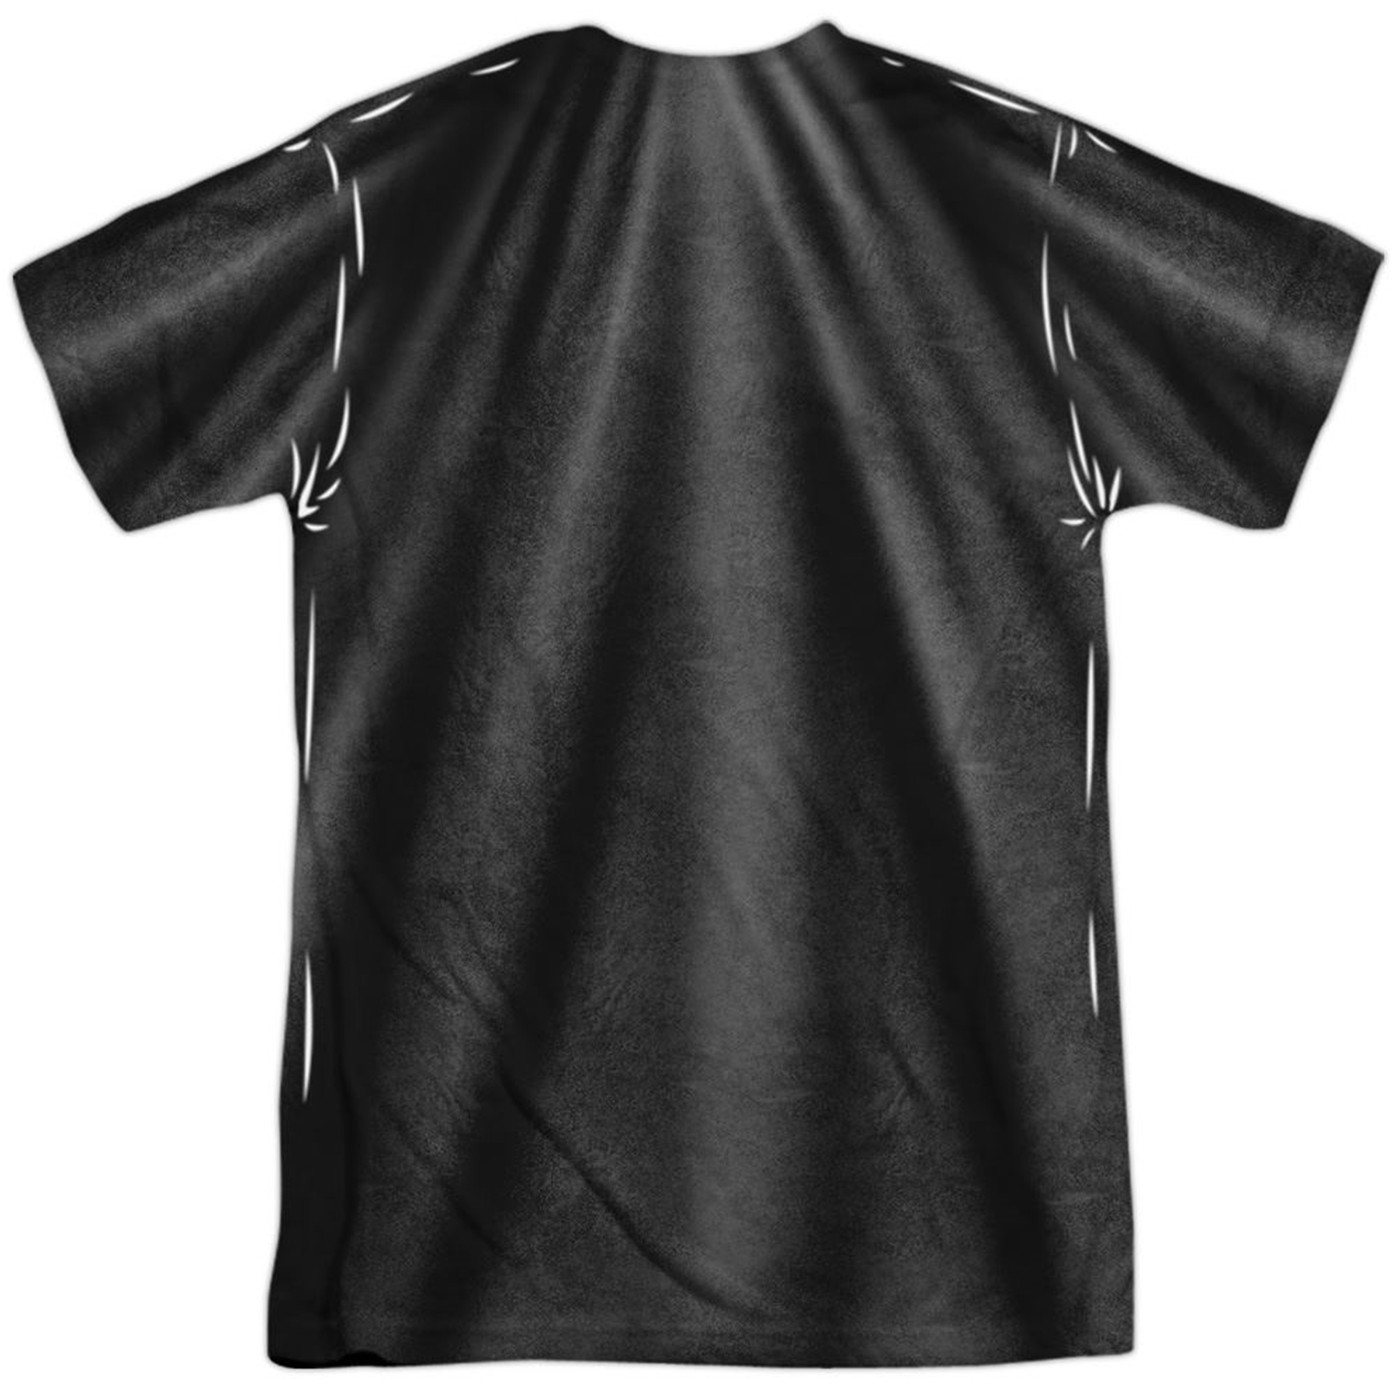 Batman Sublimated Costume Athletic Men's T-Shirt